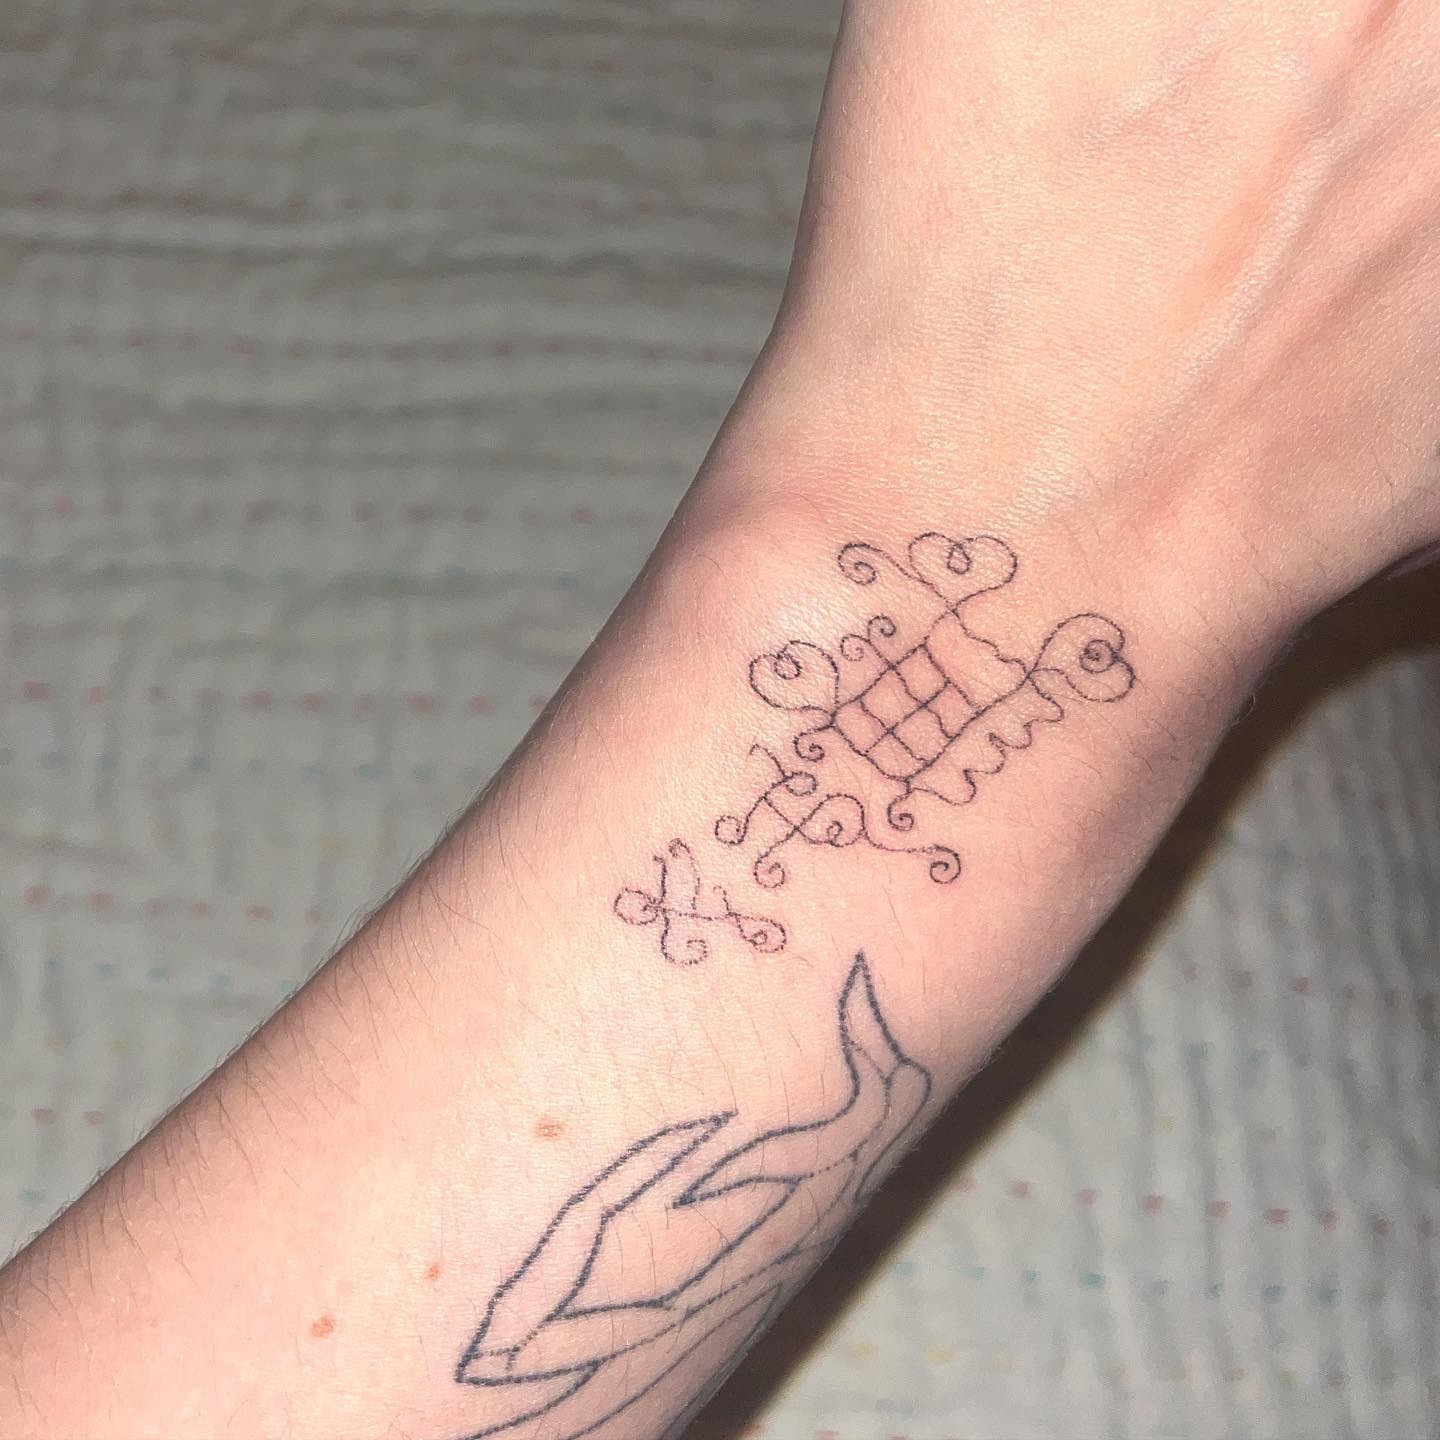 TattooGigs tattoo 1 from Yona K